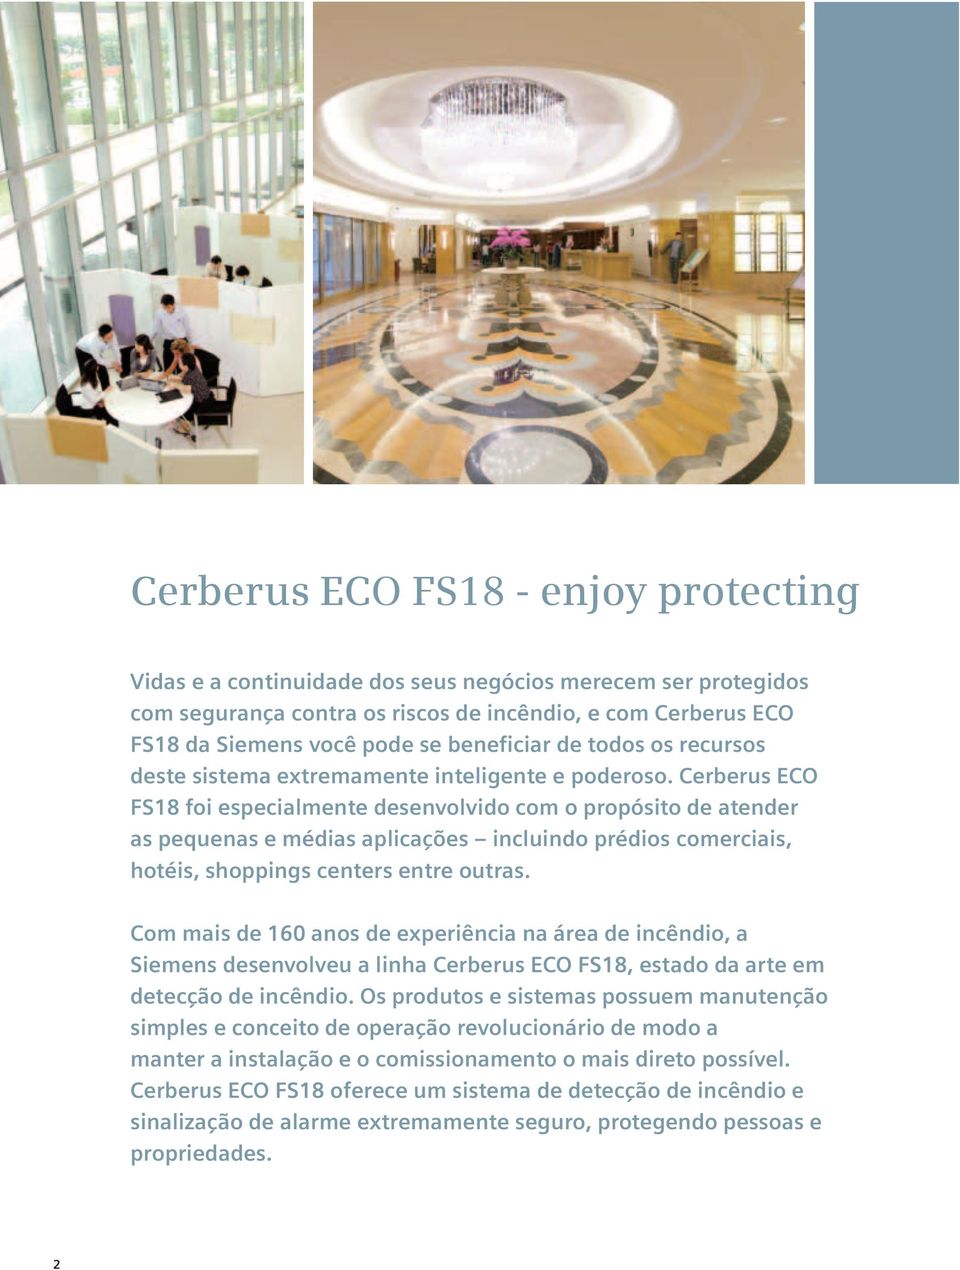 Cerberus ECO FS18 foi especialmente desenvolvido com o propósito de atender as pequenas e médias aplicações incluindo prédios comerciais, hotéis, shoppings centers entre outras.